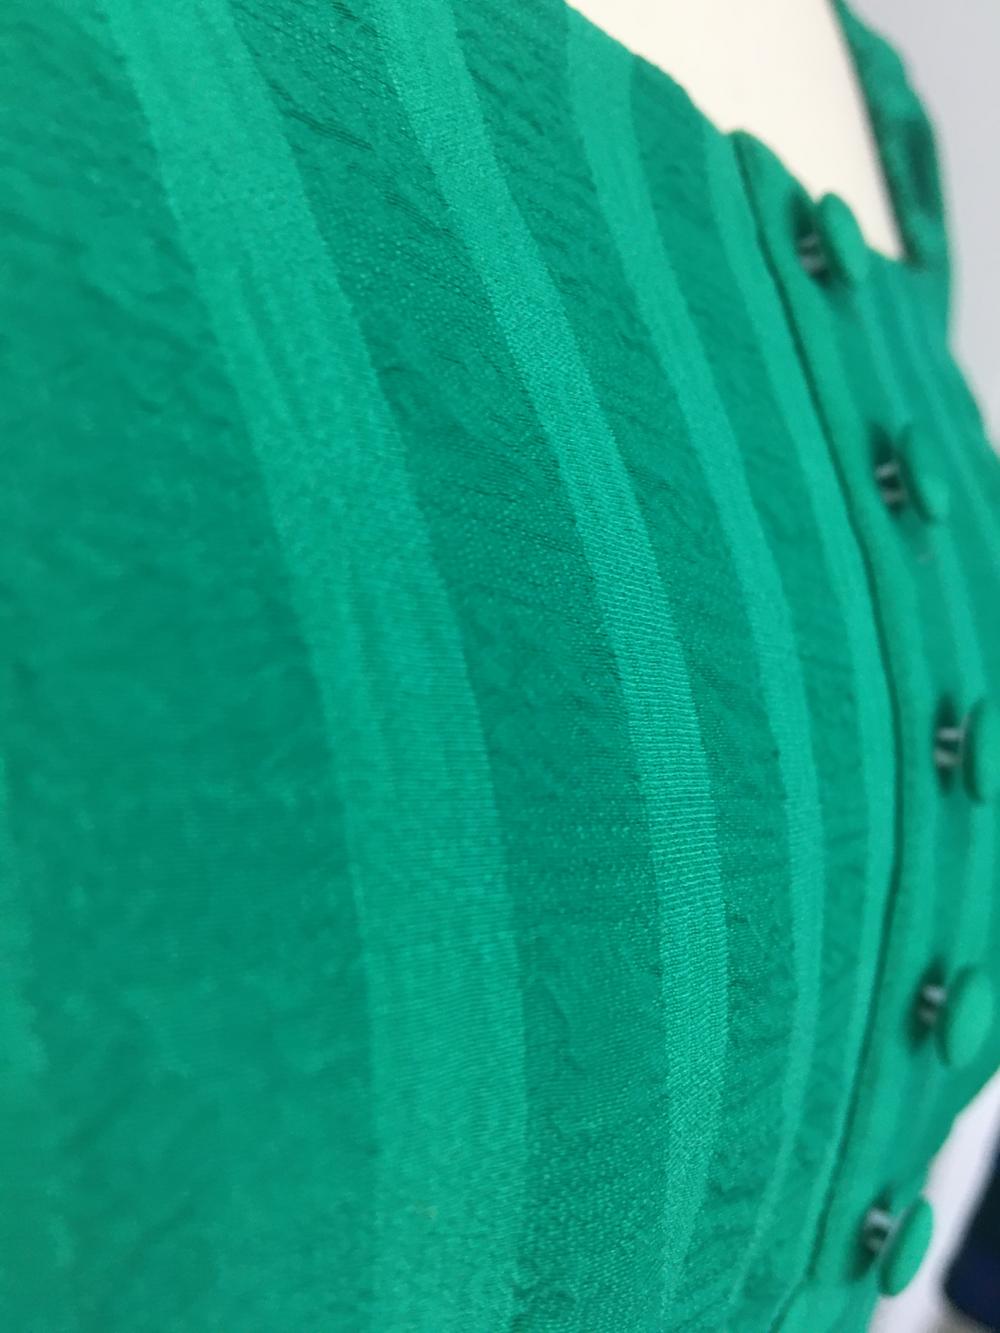 Vestido feminino verde com babado em camadas